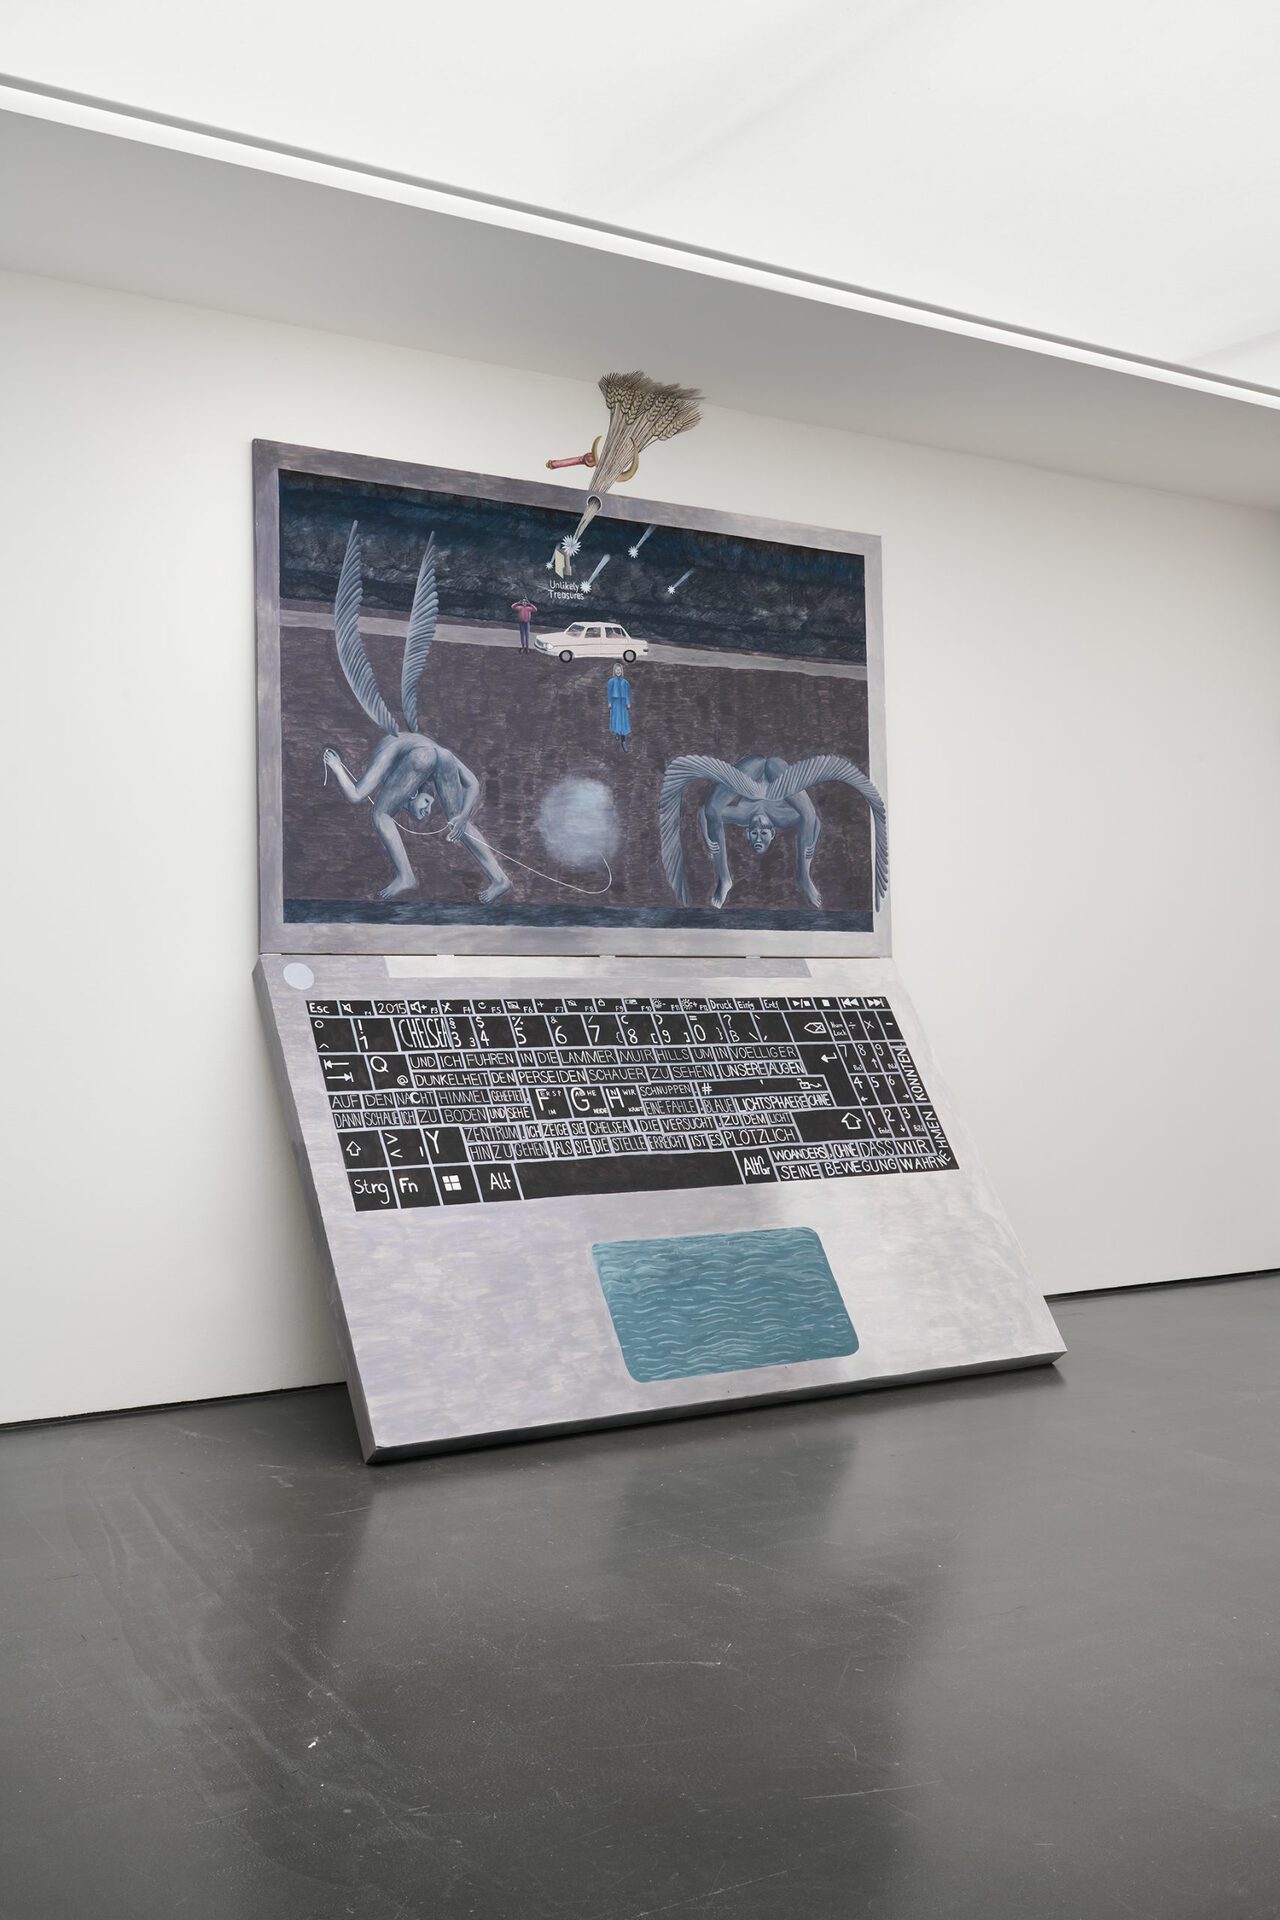 Der Perseidenschauer, 2021, wood sculpture, painting, 214 x 330 cm (screen) / 214 x 330 cm (keyboard)